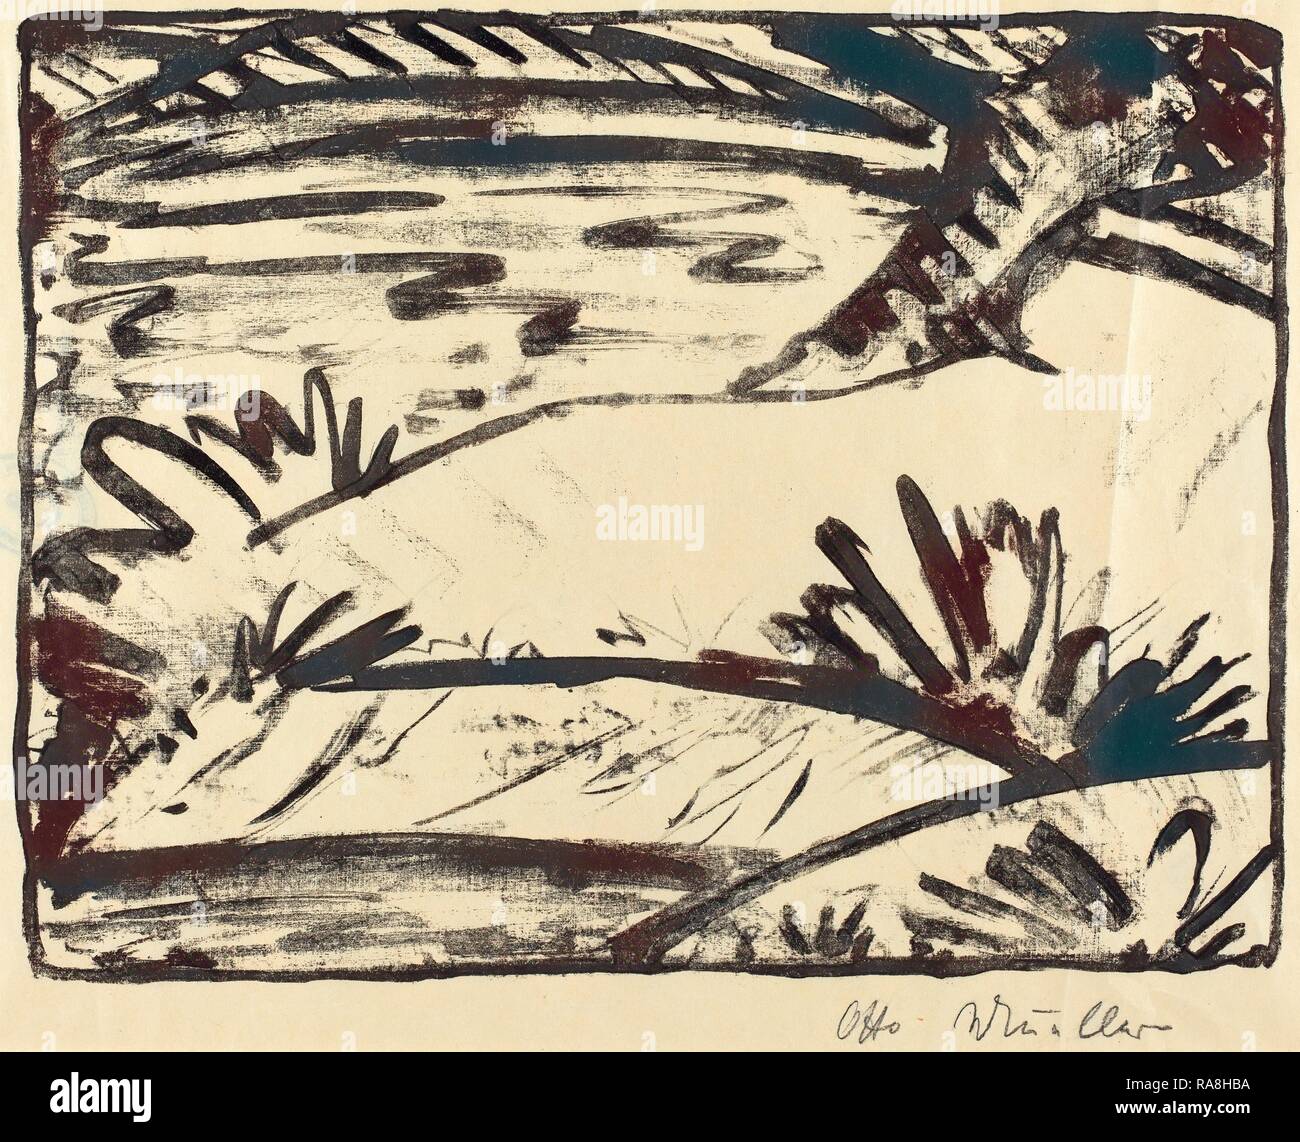 Otto Müller, paysage avec un arbre et l'eau (mitBaum Landschaft und Wasser), allemand, 1874 - 1930, ch. 1920, lithographie repensé Banque D'Images